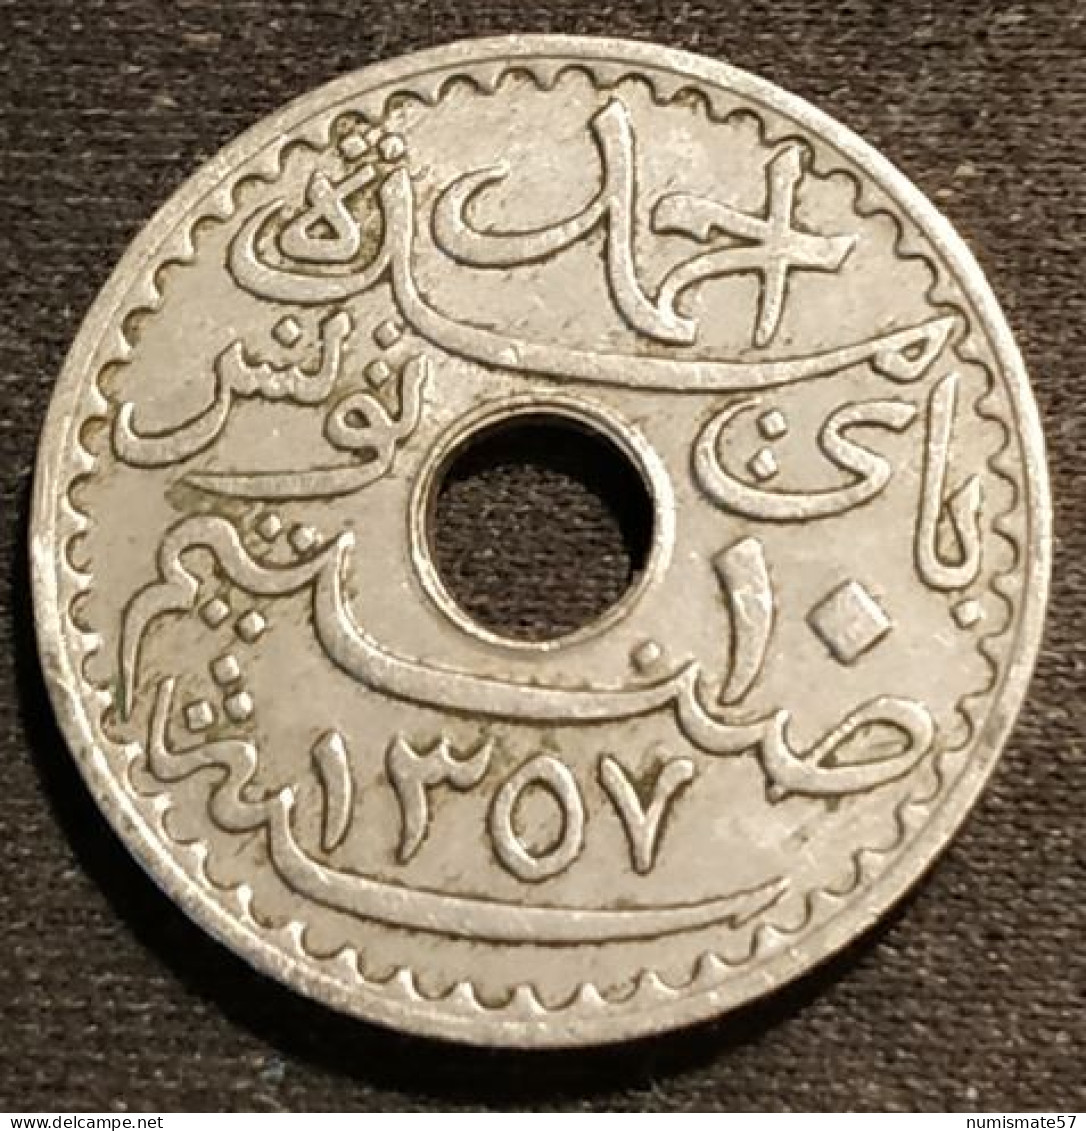 TUNISIE - TUNISIA - 10 CENTIMES 1938 ( 1357 ) - Ahmad Pasha - Protectorat Français - KM 259 - Tunisia